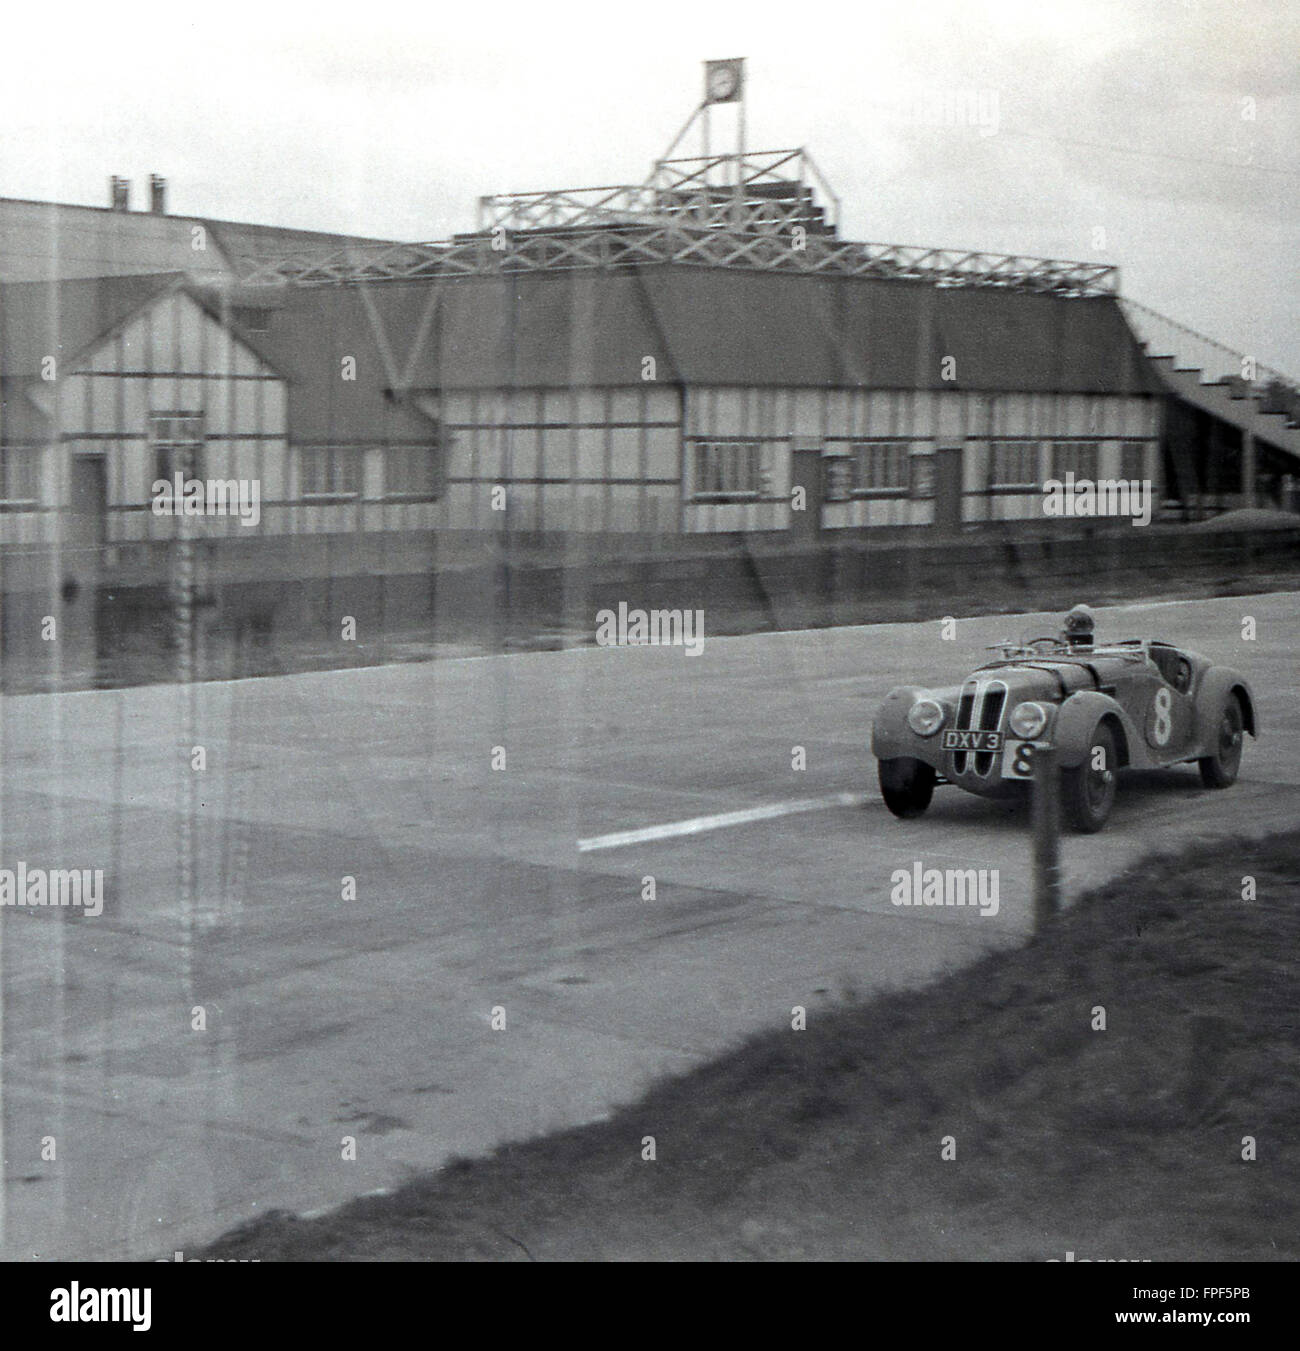 Historical aus den 1930er Jahren, ein offener Rennwagen der Ära, der sich um die Rennstrecke in Brooklands, Weybridge, Surrey, dreht. Der 1907 eröffnete Rundkurs in Brooklands ist der Geburtsort des britischen Motorsports. Stockfoto